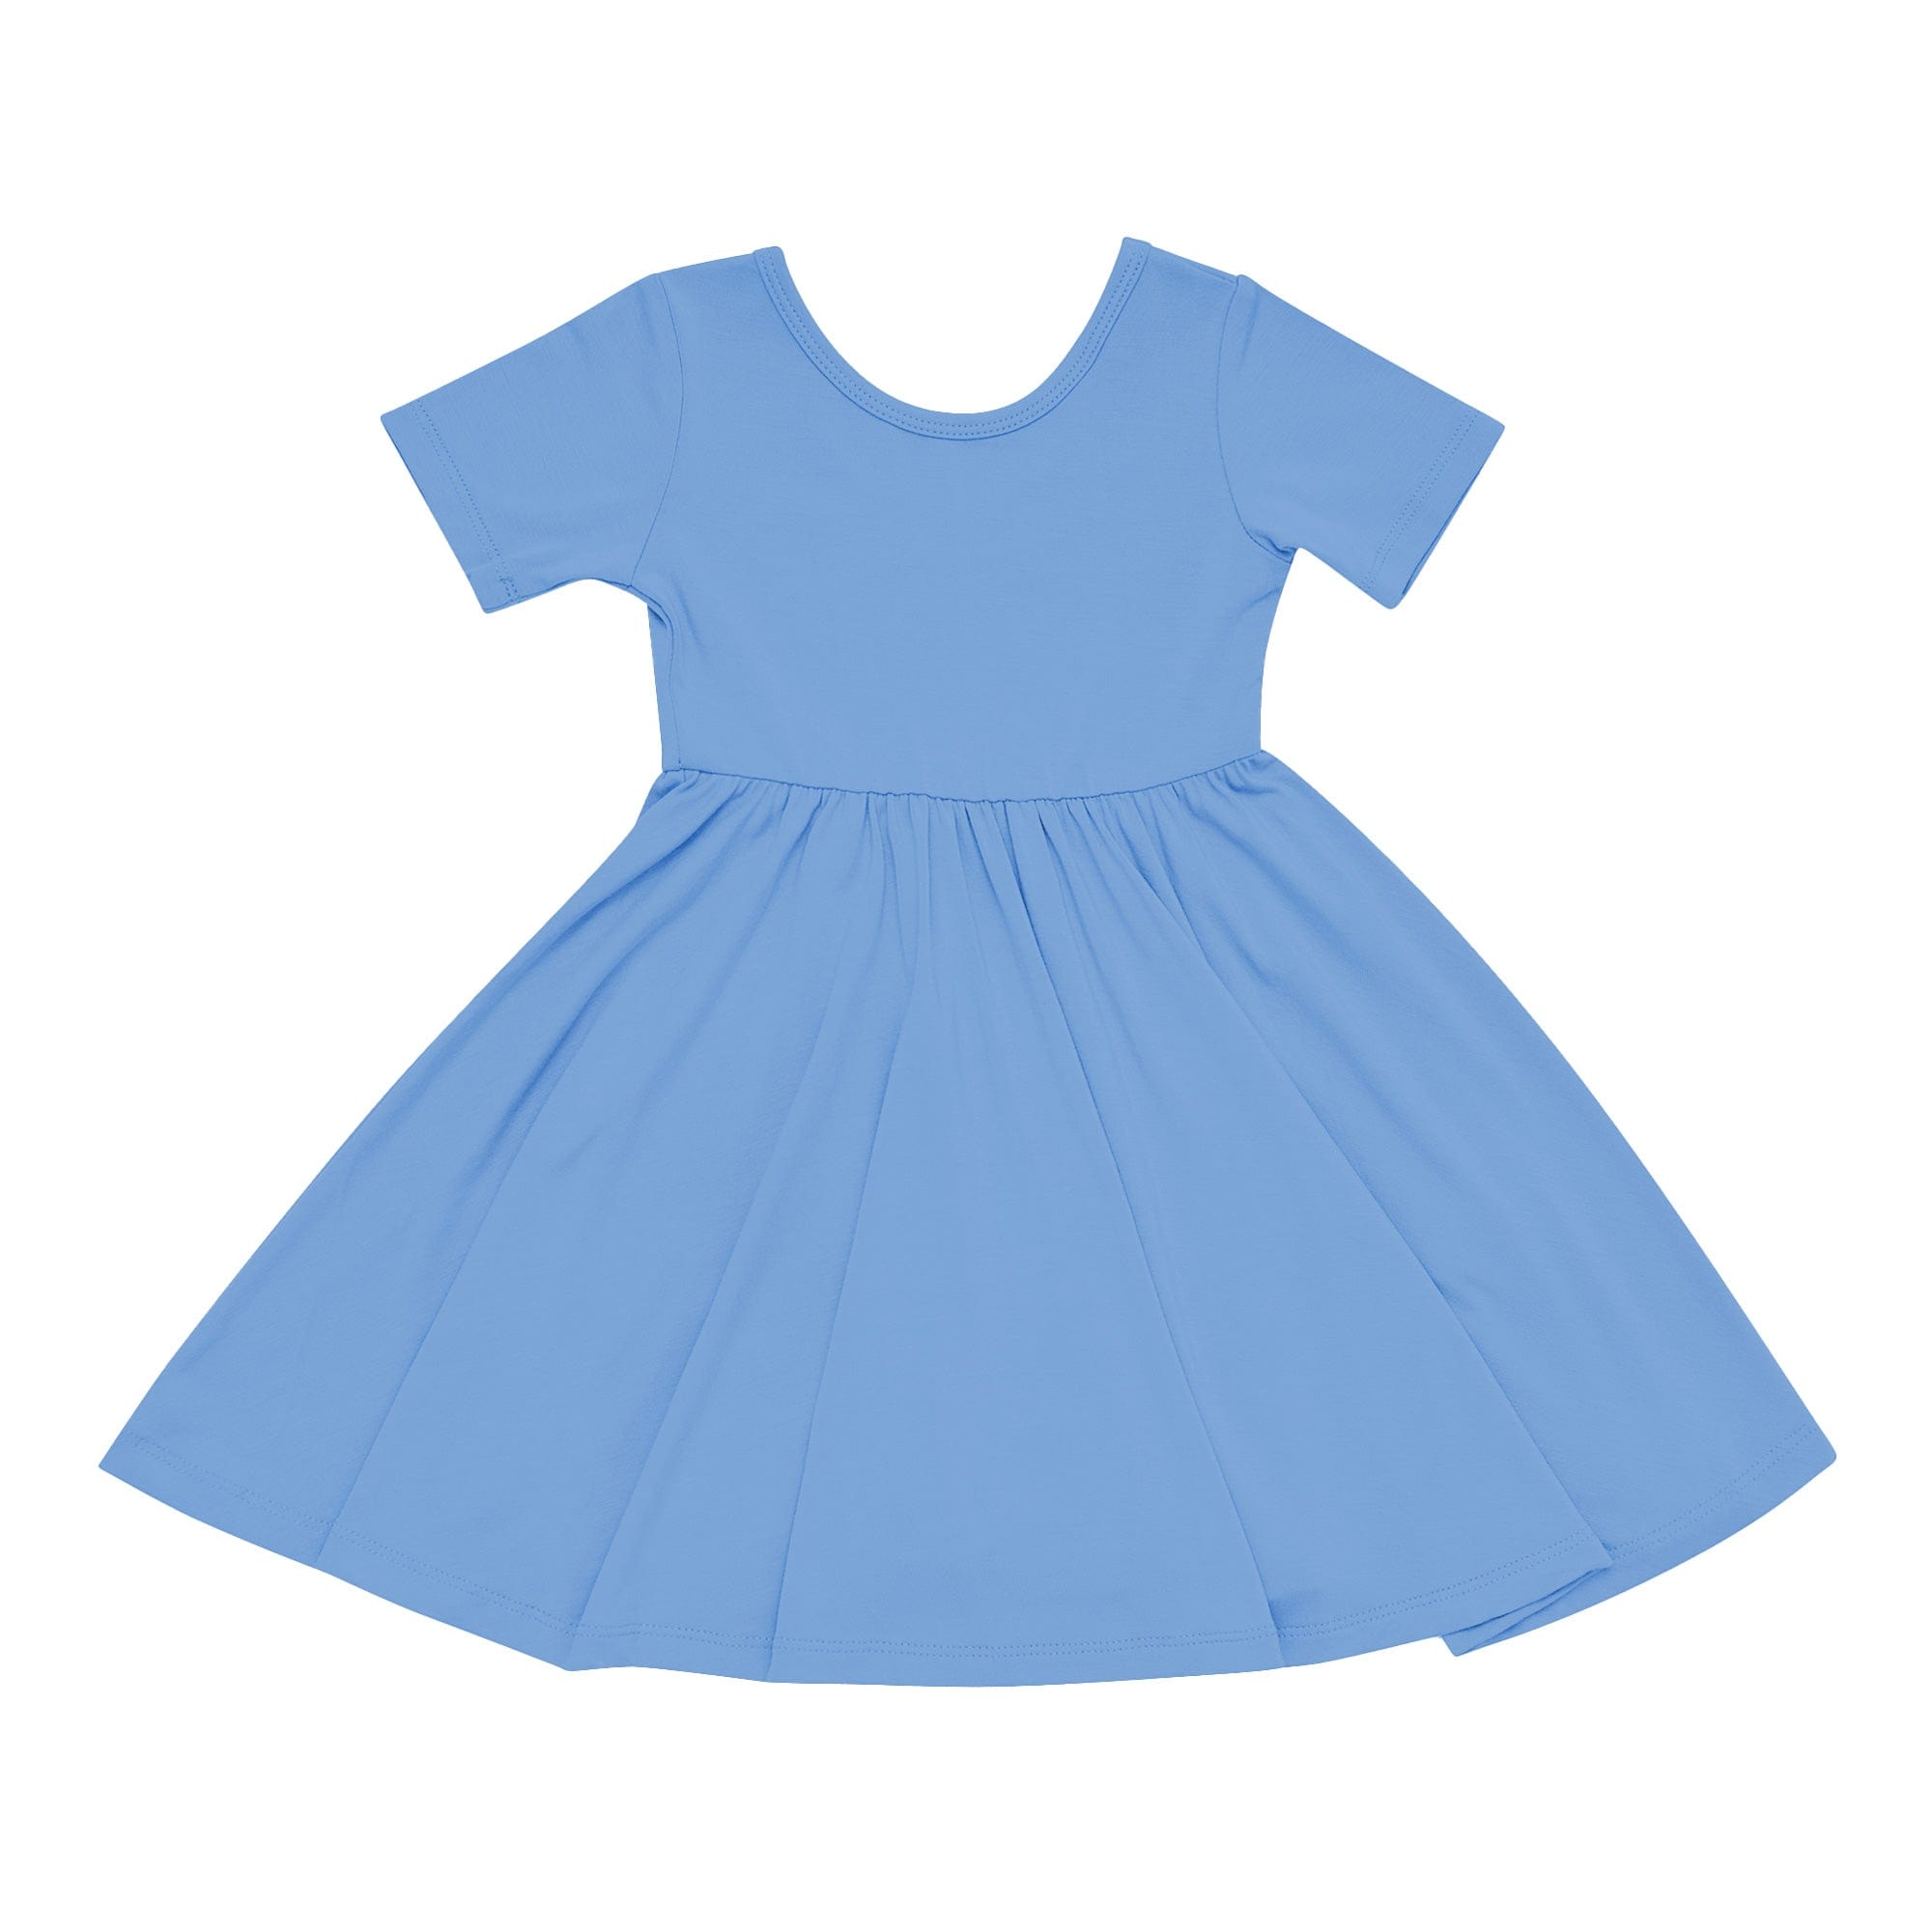 Kyte BABY Toddler Short Sleeve Twirl Dress Twirl Dress in Periwinkle